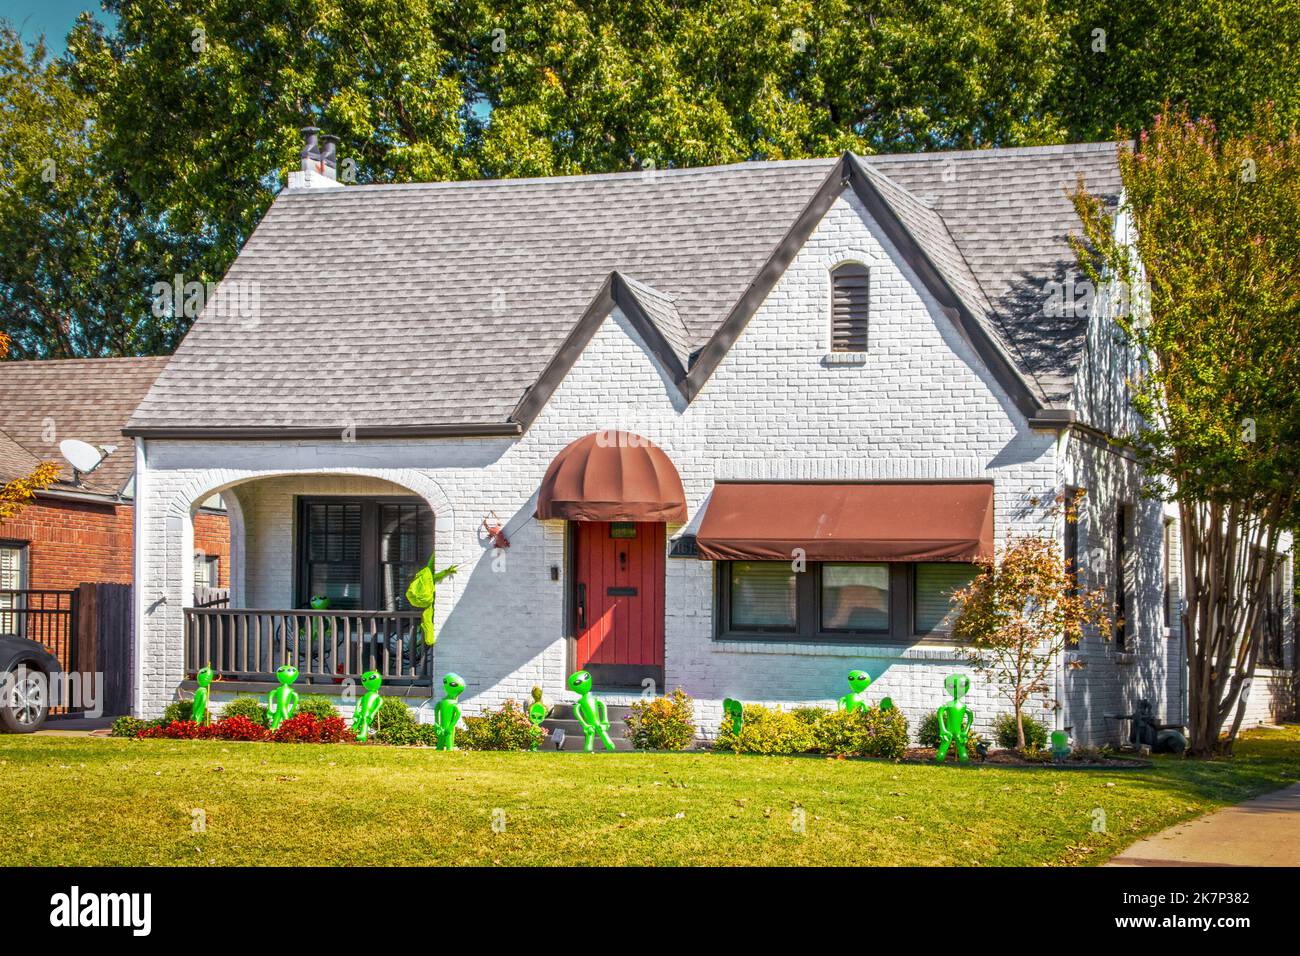 Niedliches Häuschen aus weiß lackiertem Ziegel mit Markisen und roter rustikaler Tür, die für Halloween mit aufblasbaren grünen Außerirdischen dekoriert ist - Invasion aus dem Weltraum Stockfoto